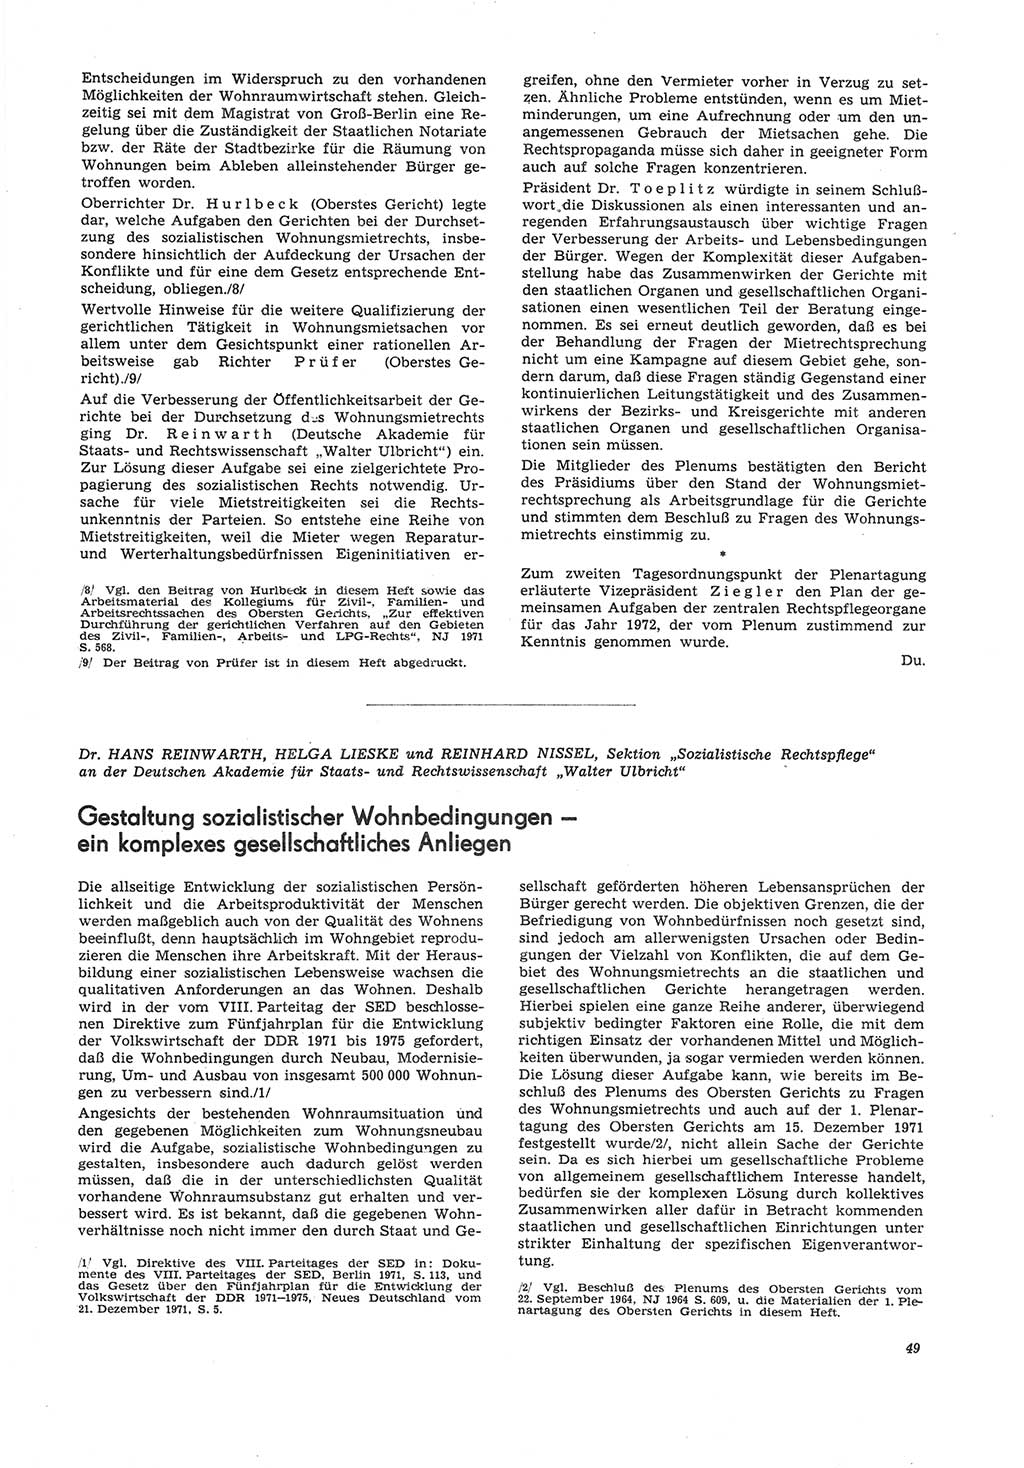 Neue Justiz (NJ), Zeitschrift für Recht und Rechtswissenschaft [Deutsche Demokratische Republik (DDR)], 26. Jahrgang 1972, Seite 49 (NJ DDR 1972, S. 49)